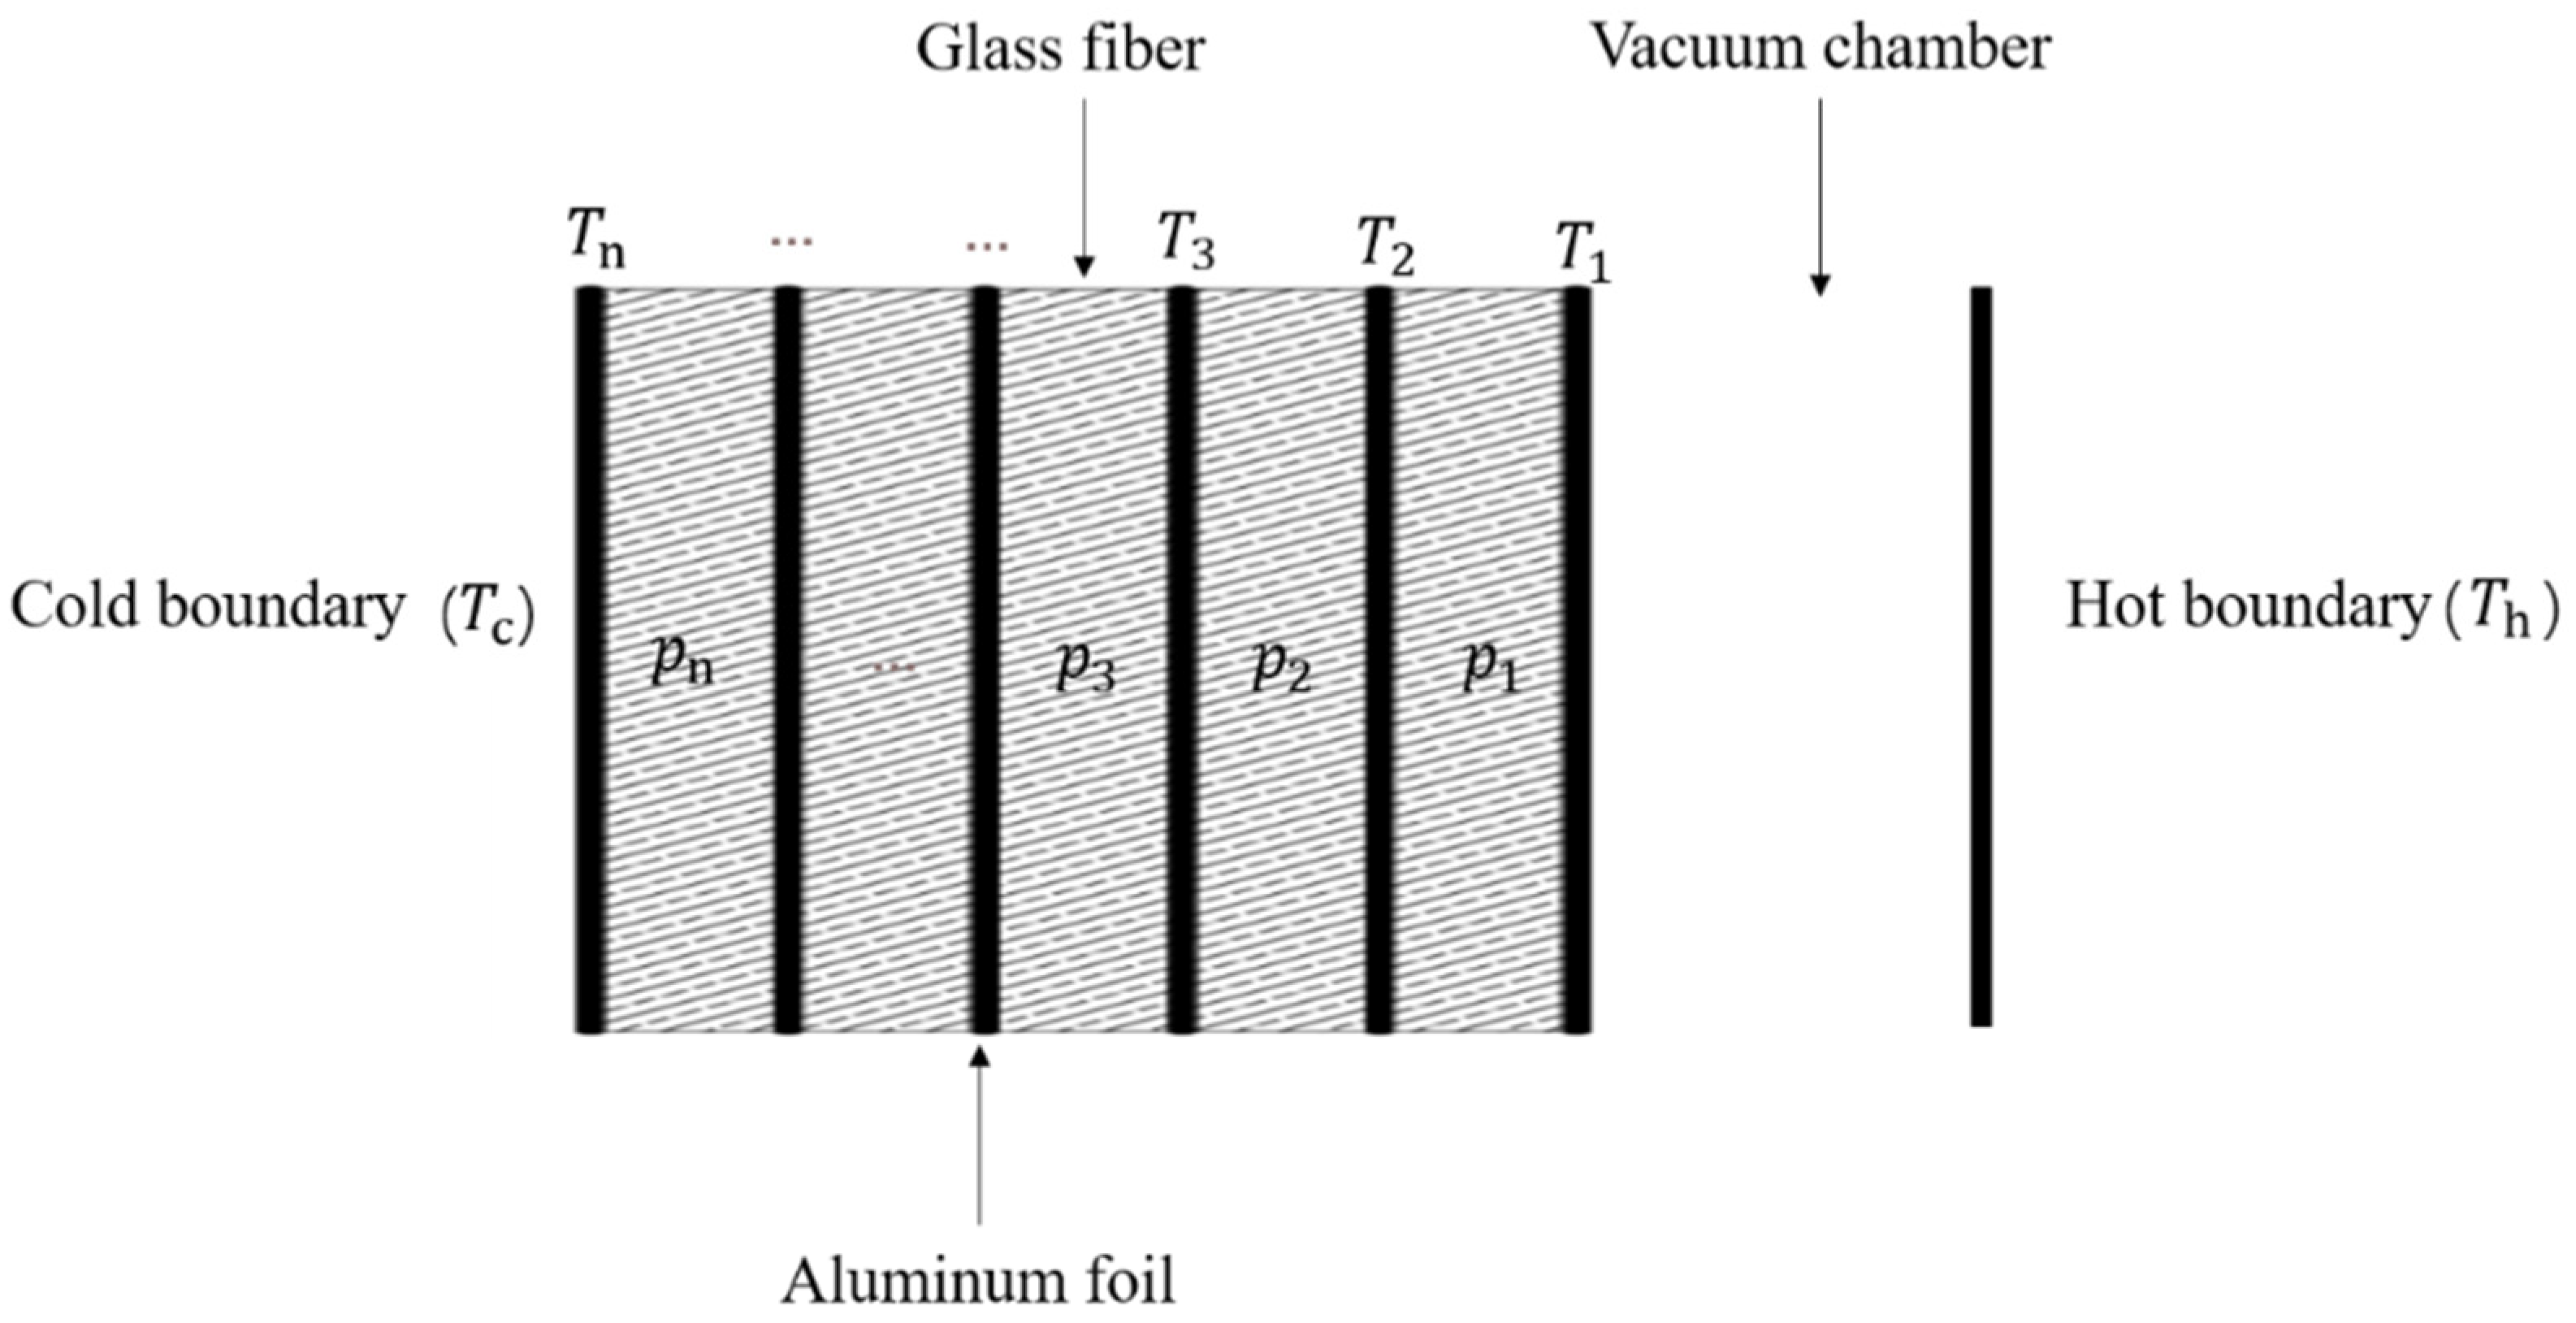 Vacuum Super Insulation  High Temperature Multilayer Insulation (MLI)